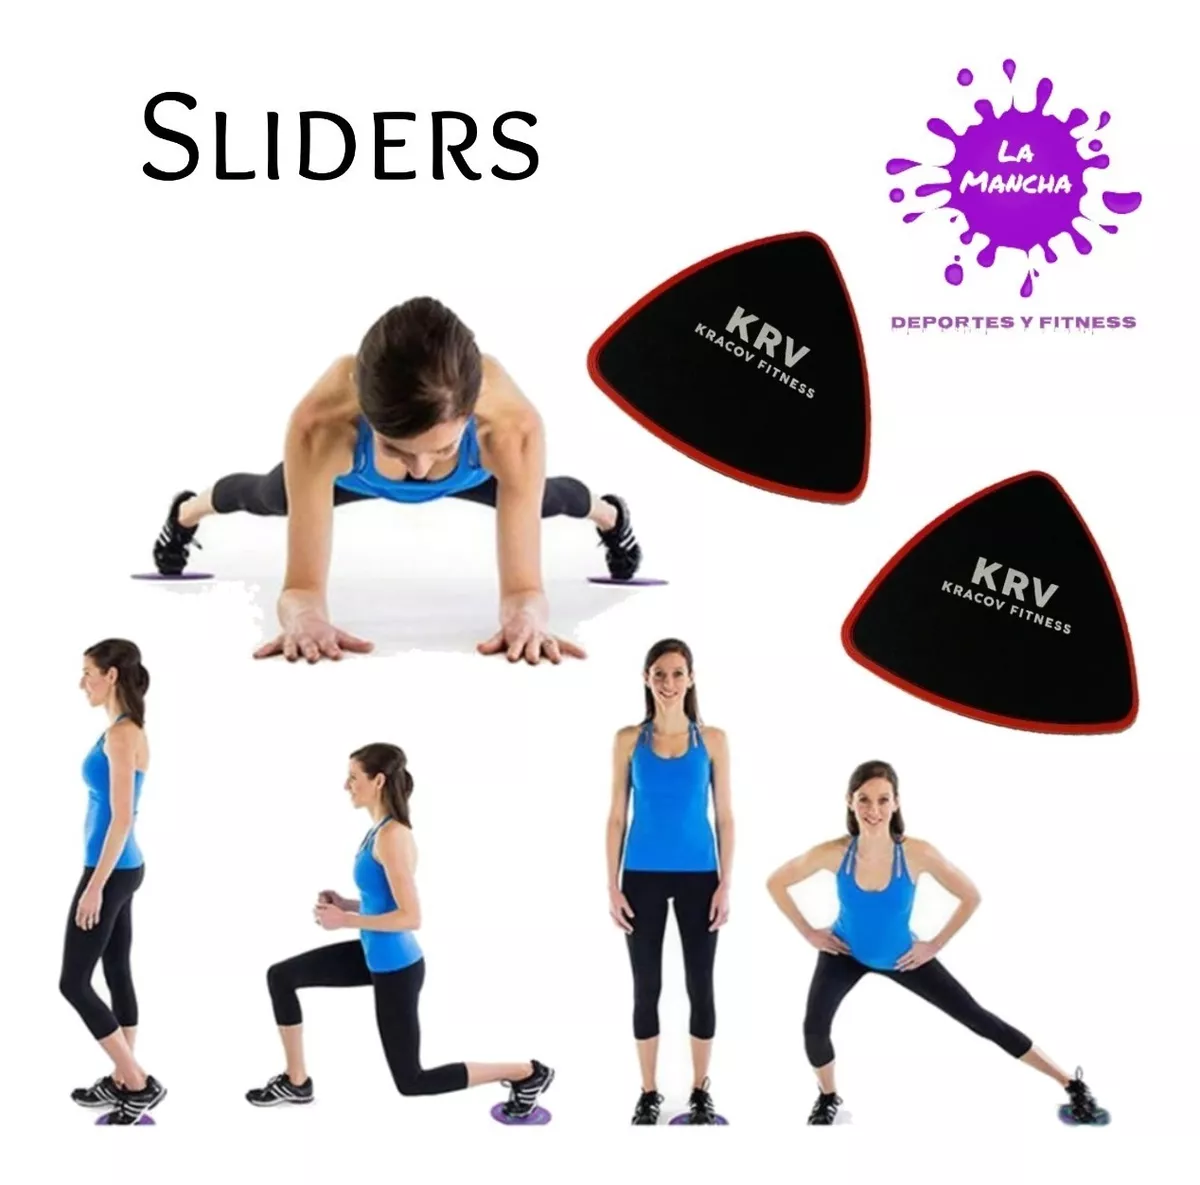 Core Sliders Fitness Entrenamiento